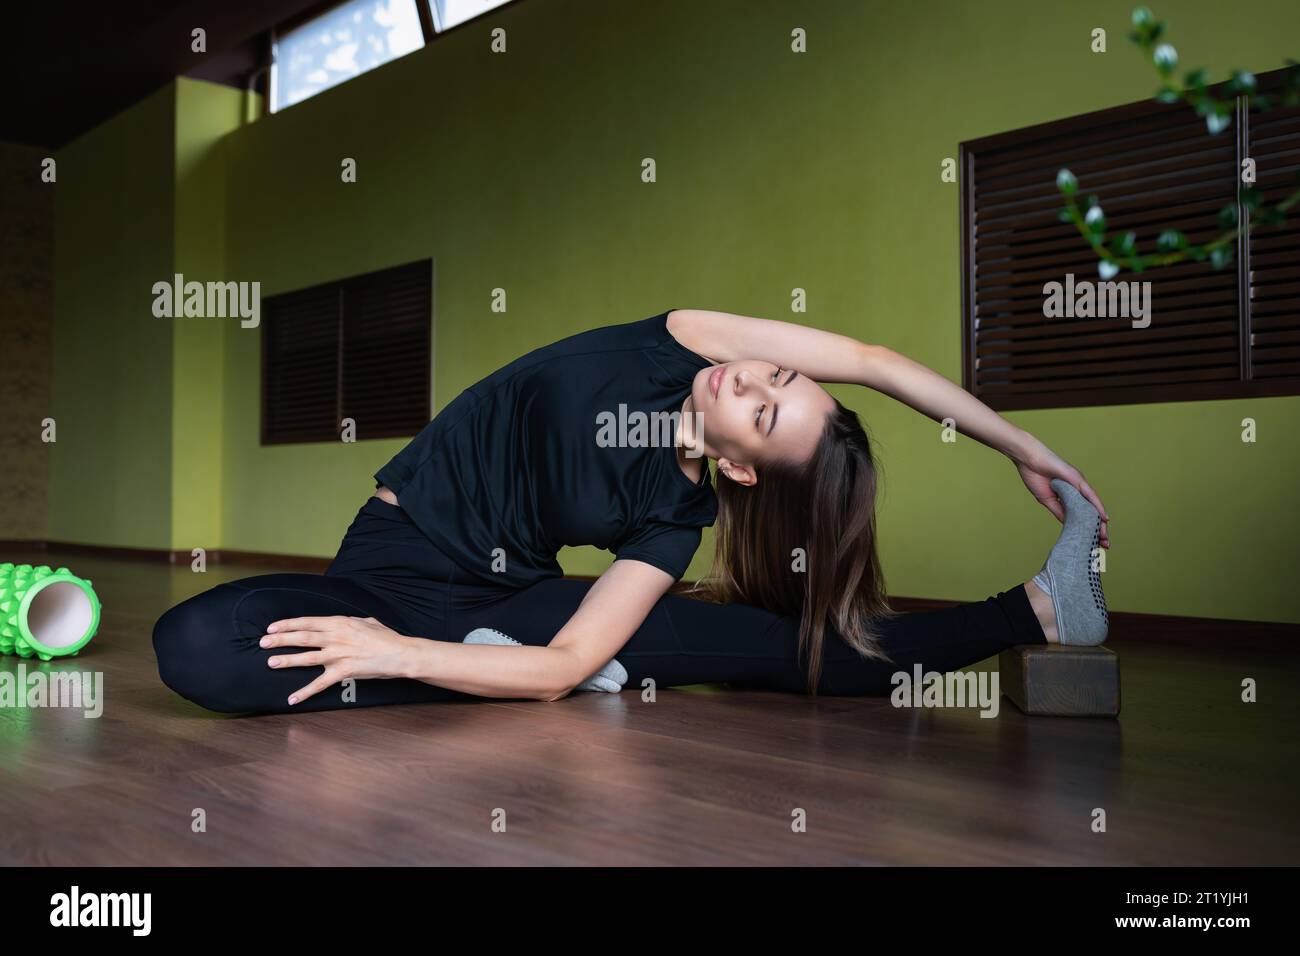 Una giovane donna che conduce uno stile di vita sano e pratica yoga esegue l'esercizio Parivritta Janu Shirshasana, un'inclinazione testa-ginocchio invertita, traini Foto Stock